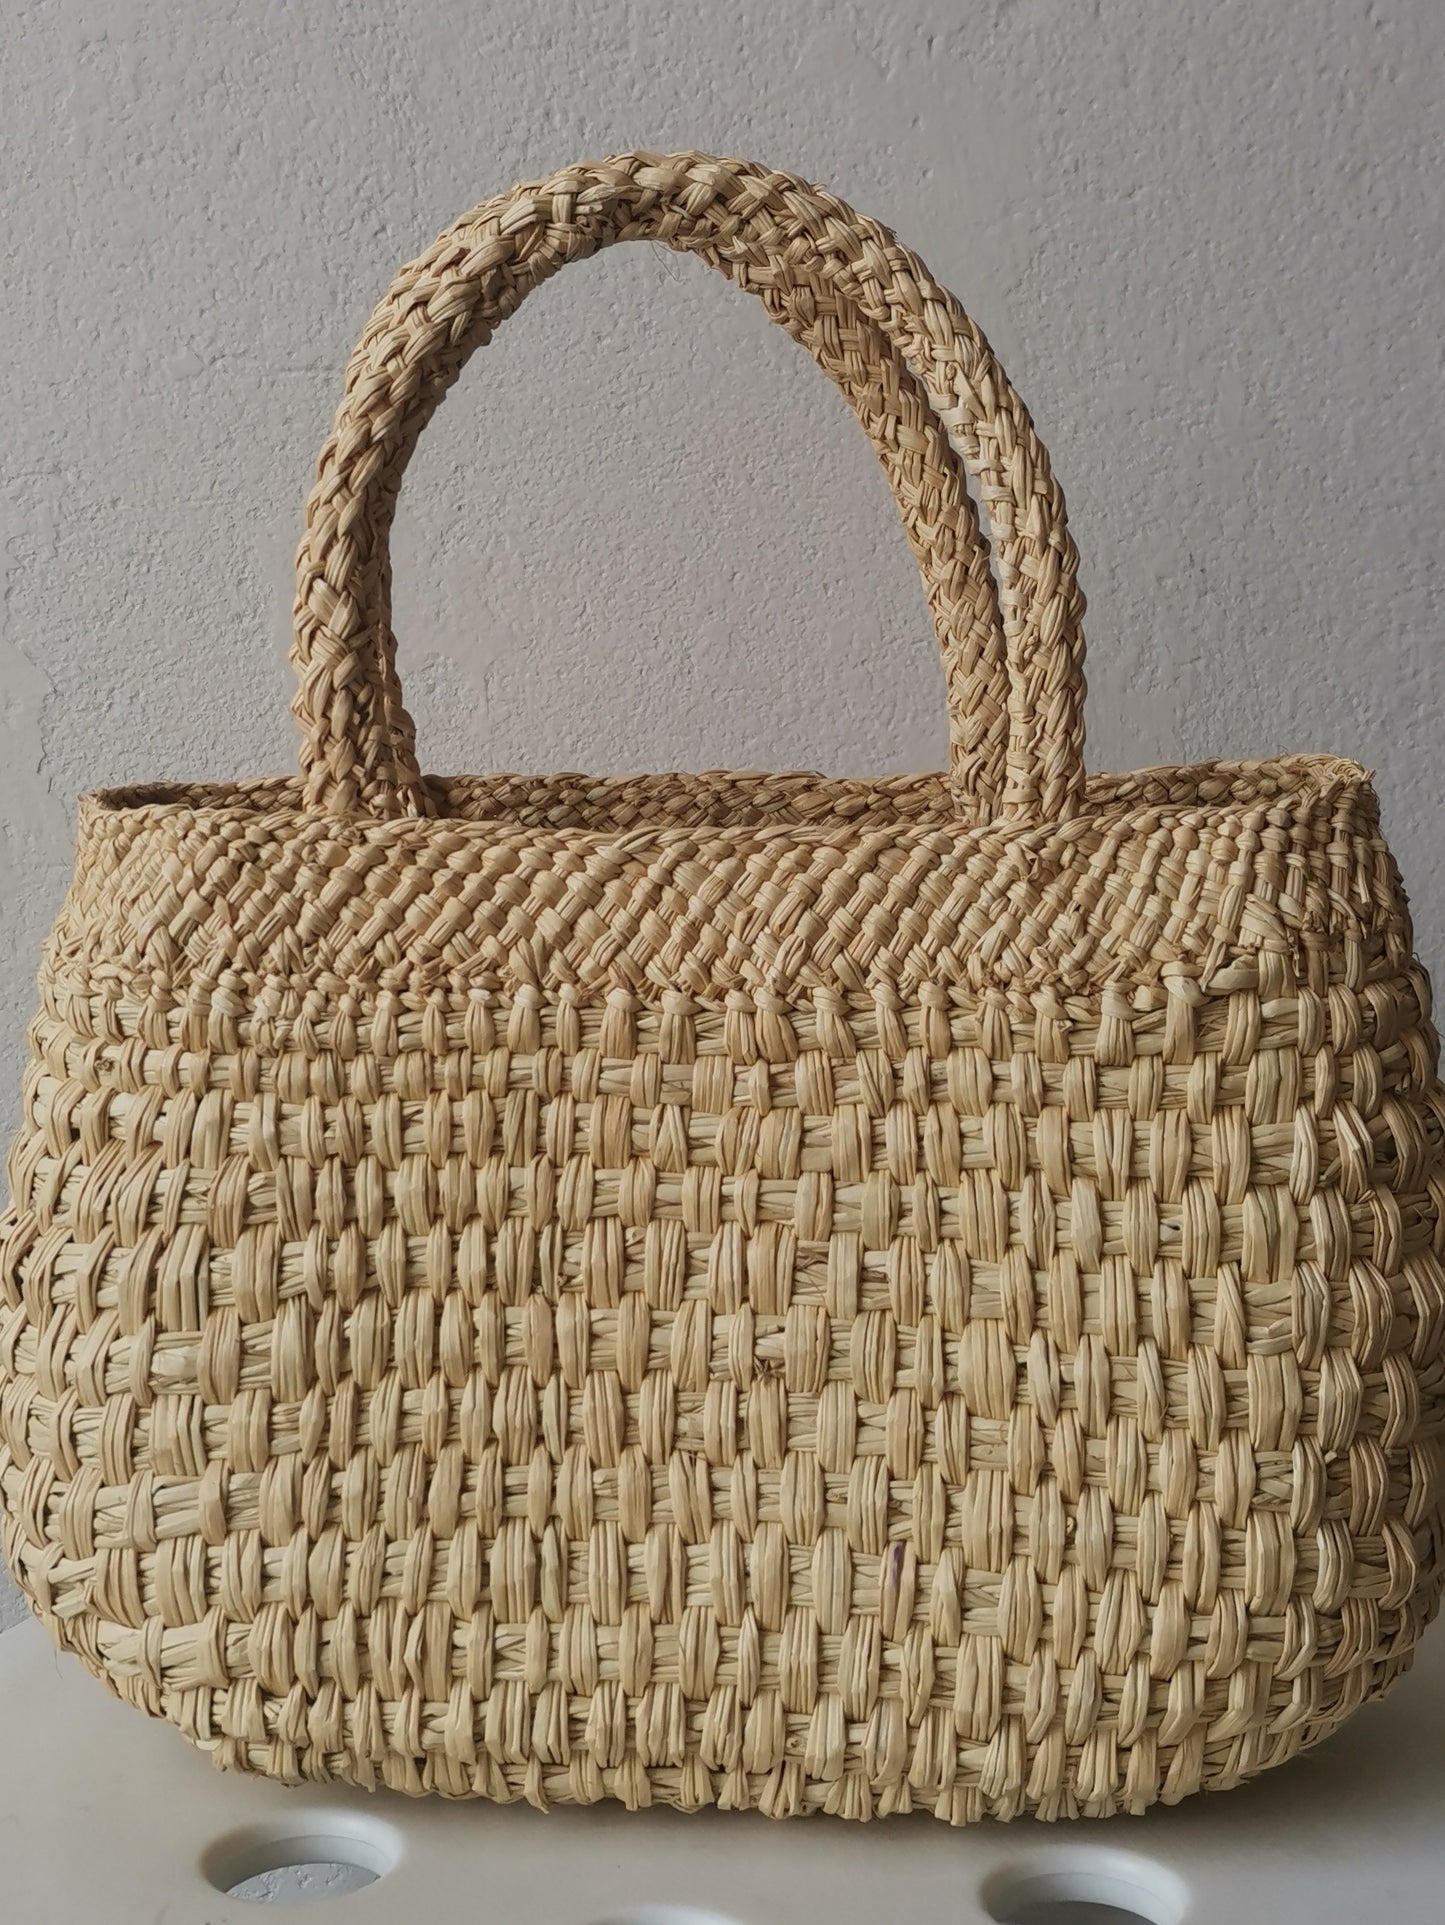 Cali S basket bag natural color